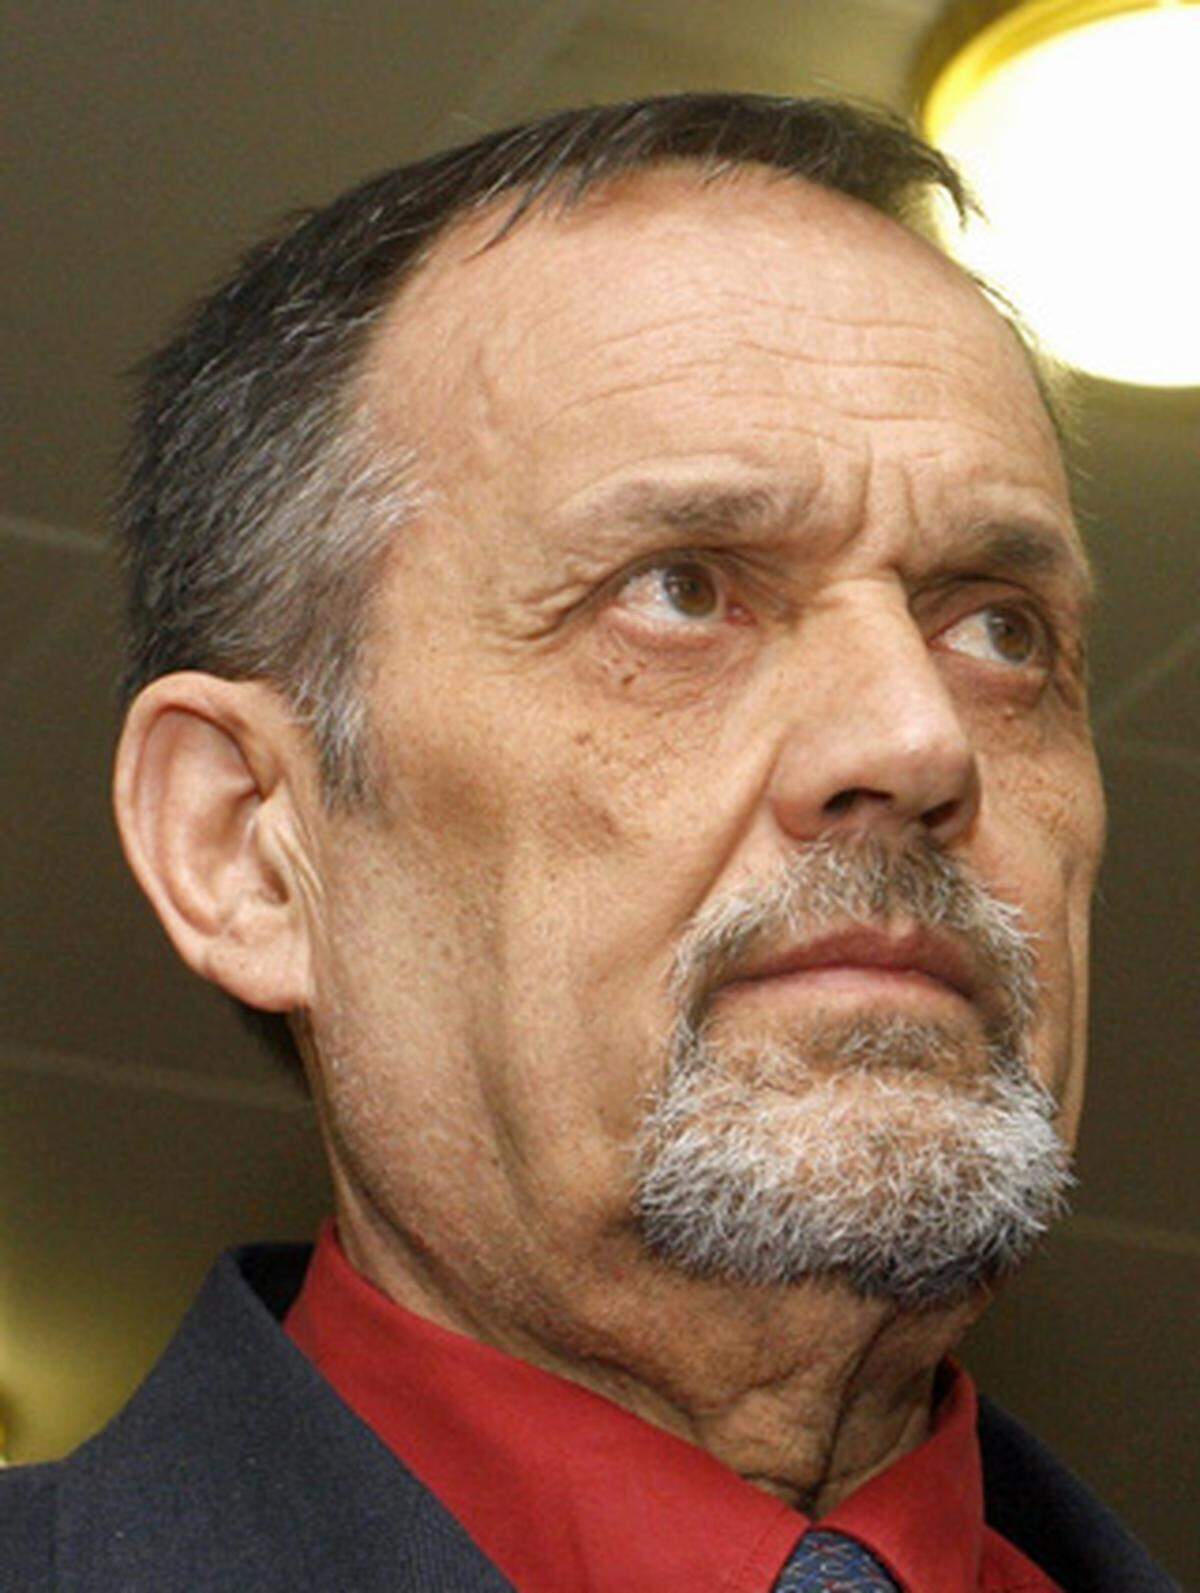 Der in Österreich nach dem Verbotsgesetz verurteilte Neonazi Gerd Honsik wird in Spanien festgenommen und im April 2009 nicht rechtskräftig zu fünf Jahren Haft wegen Wiederbetätigung verurteilt.